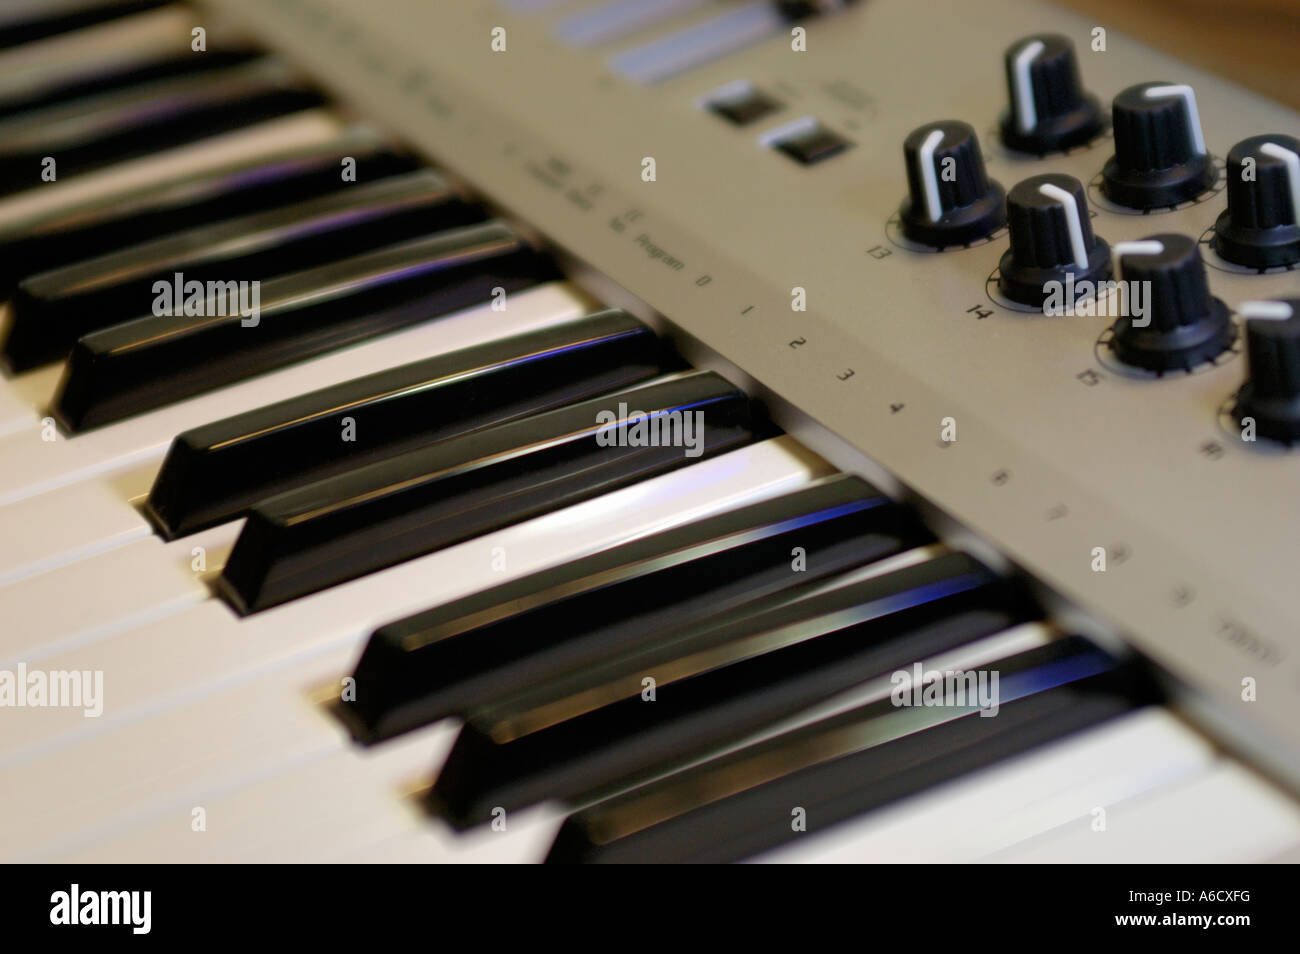 Una produzione di musica tastiera che vengono utilizzati quando è collegato a un computer e utilizzato per rendere la musica elettronica può essere cubase Foto Stock